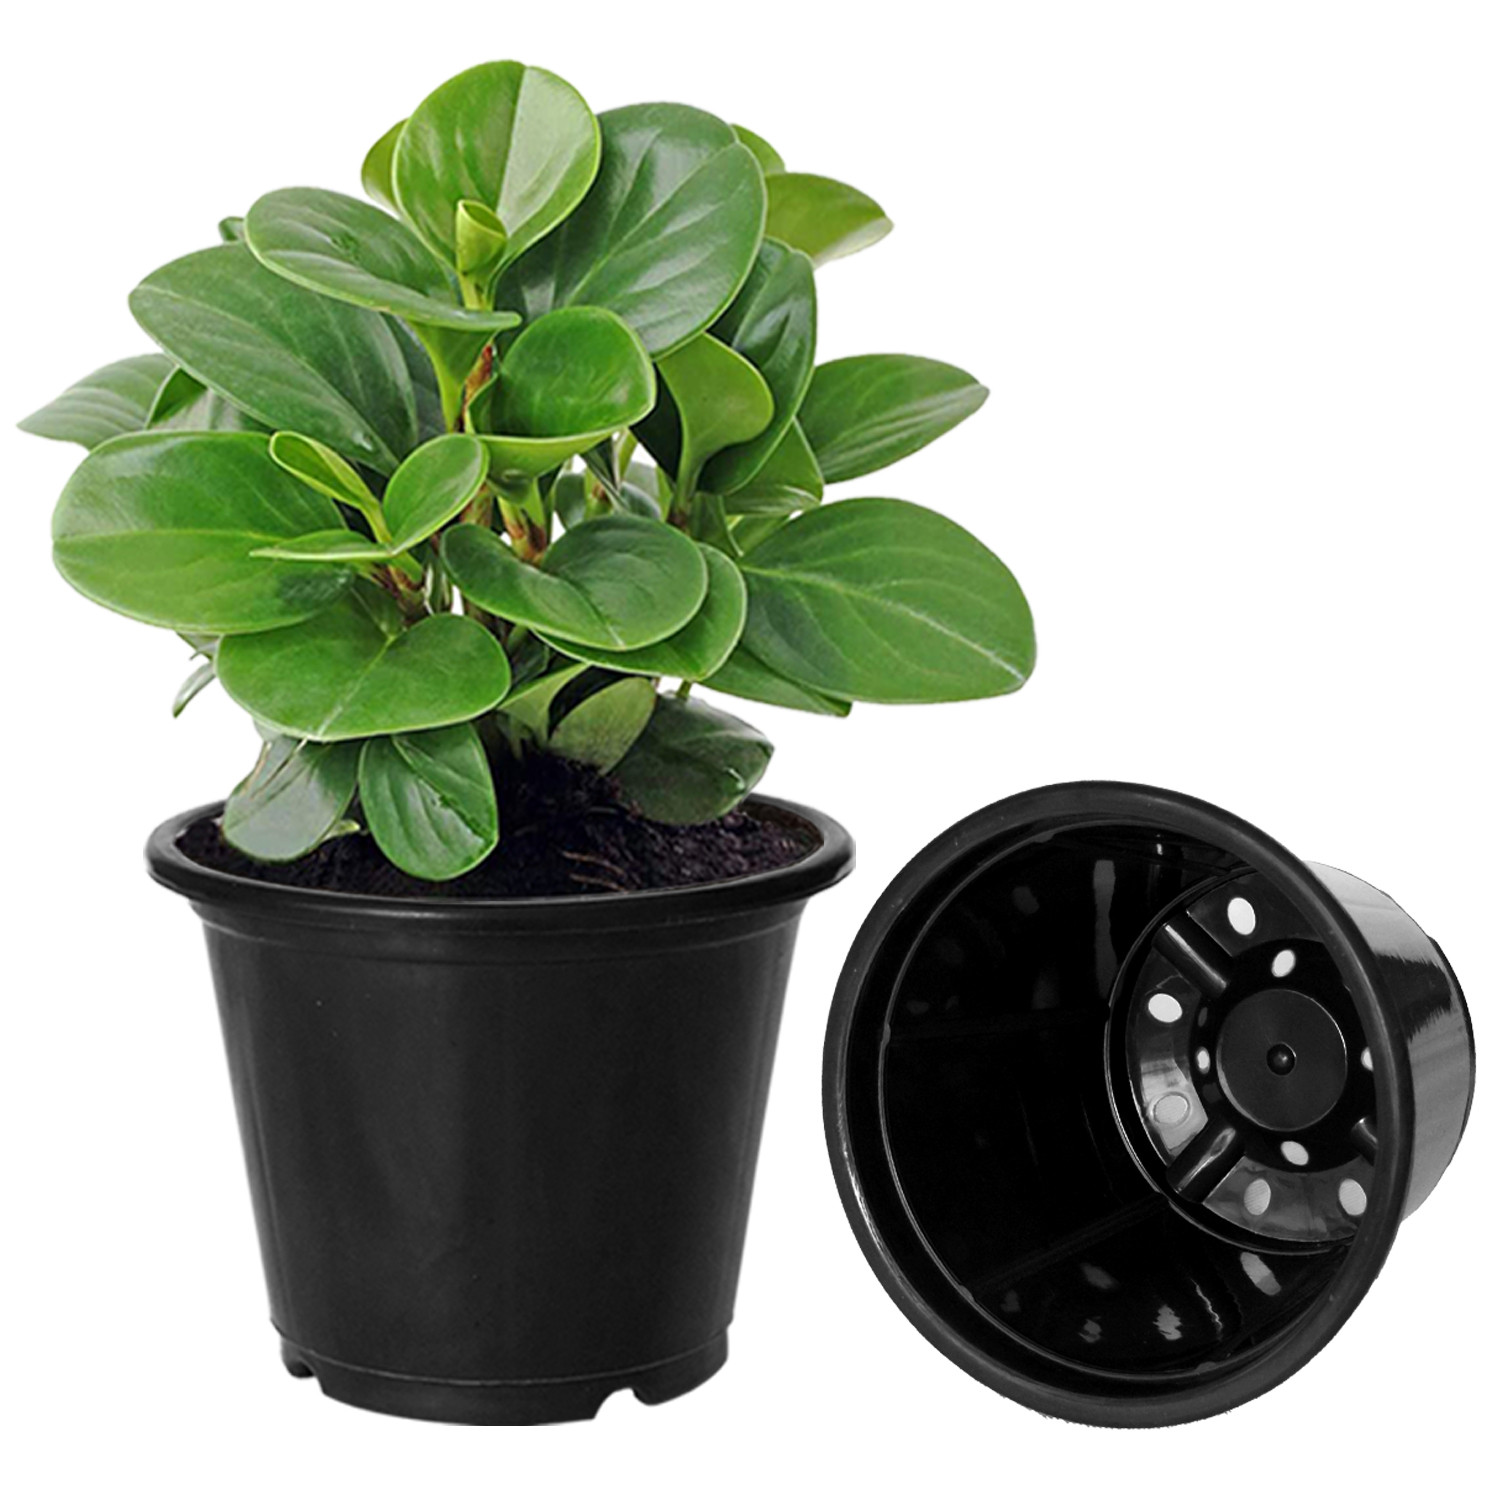 Kuber Industries Durable Plastic Flower Pot|Gamla With Drain Holes for Indoor Home Decor & Outdoor Balcony,Garden,6